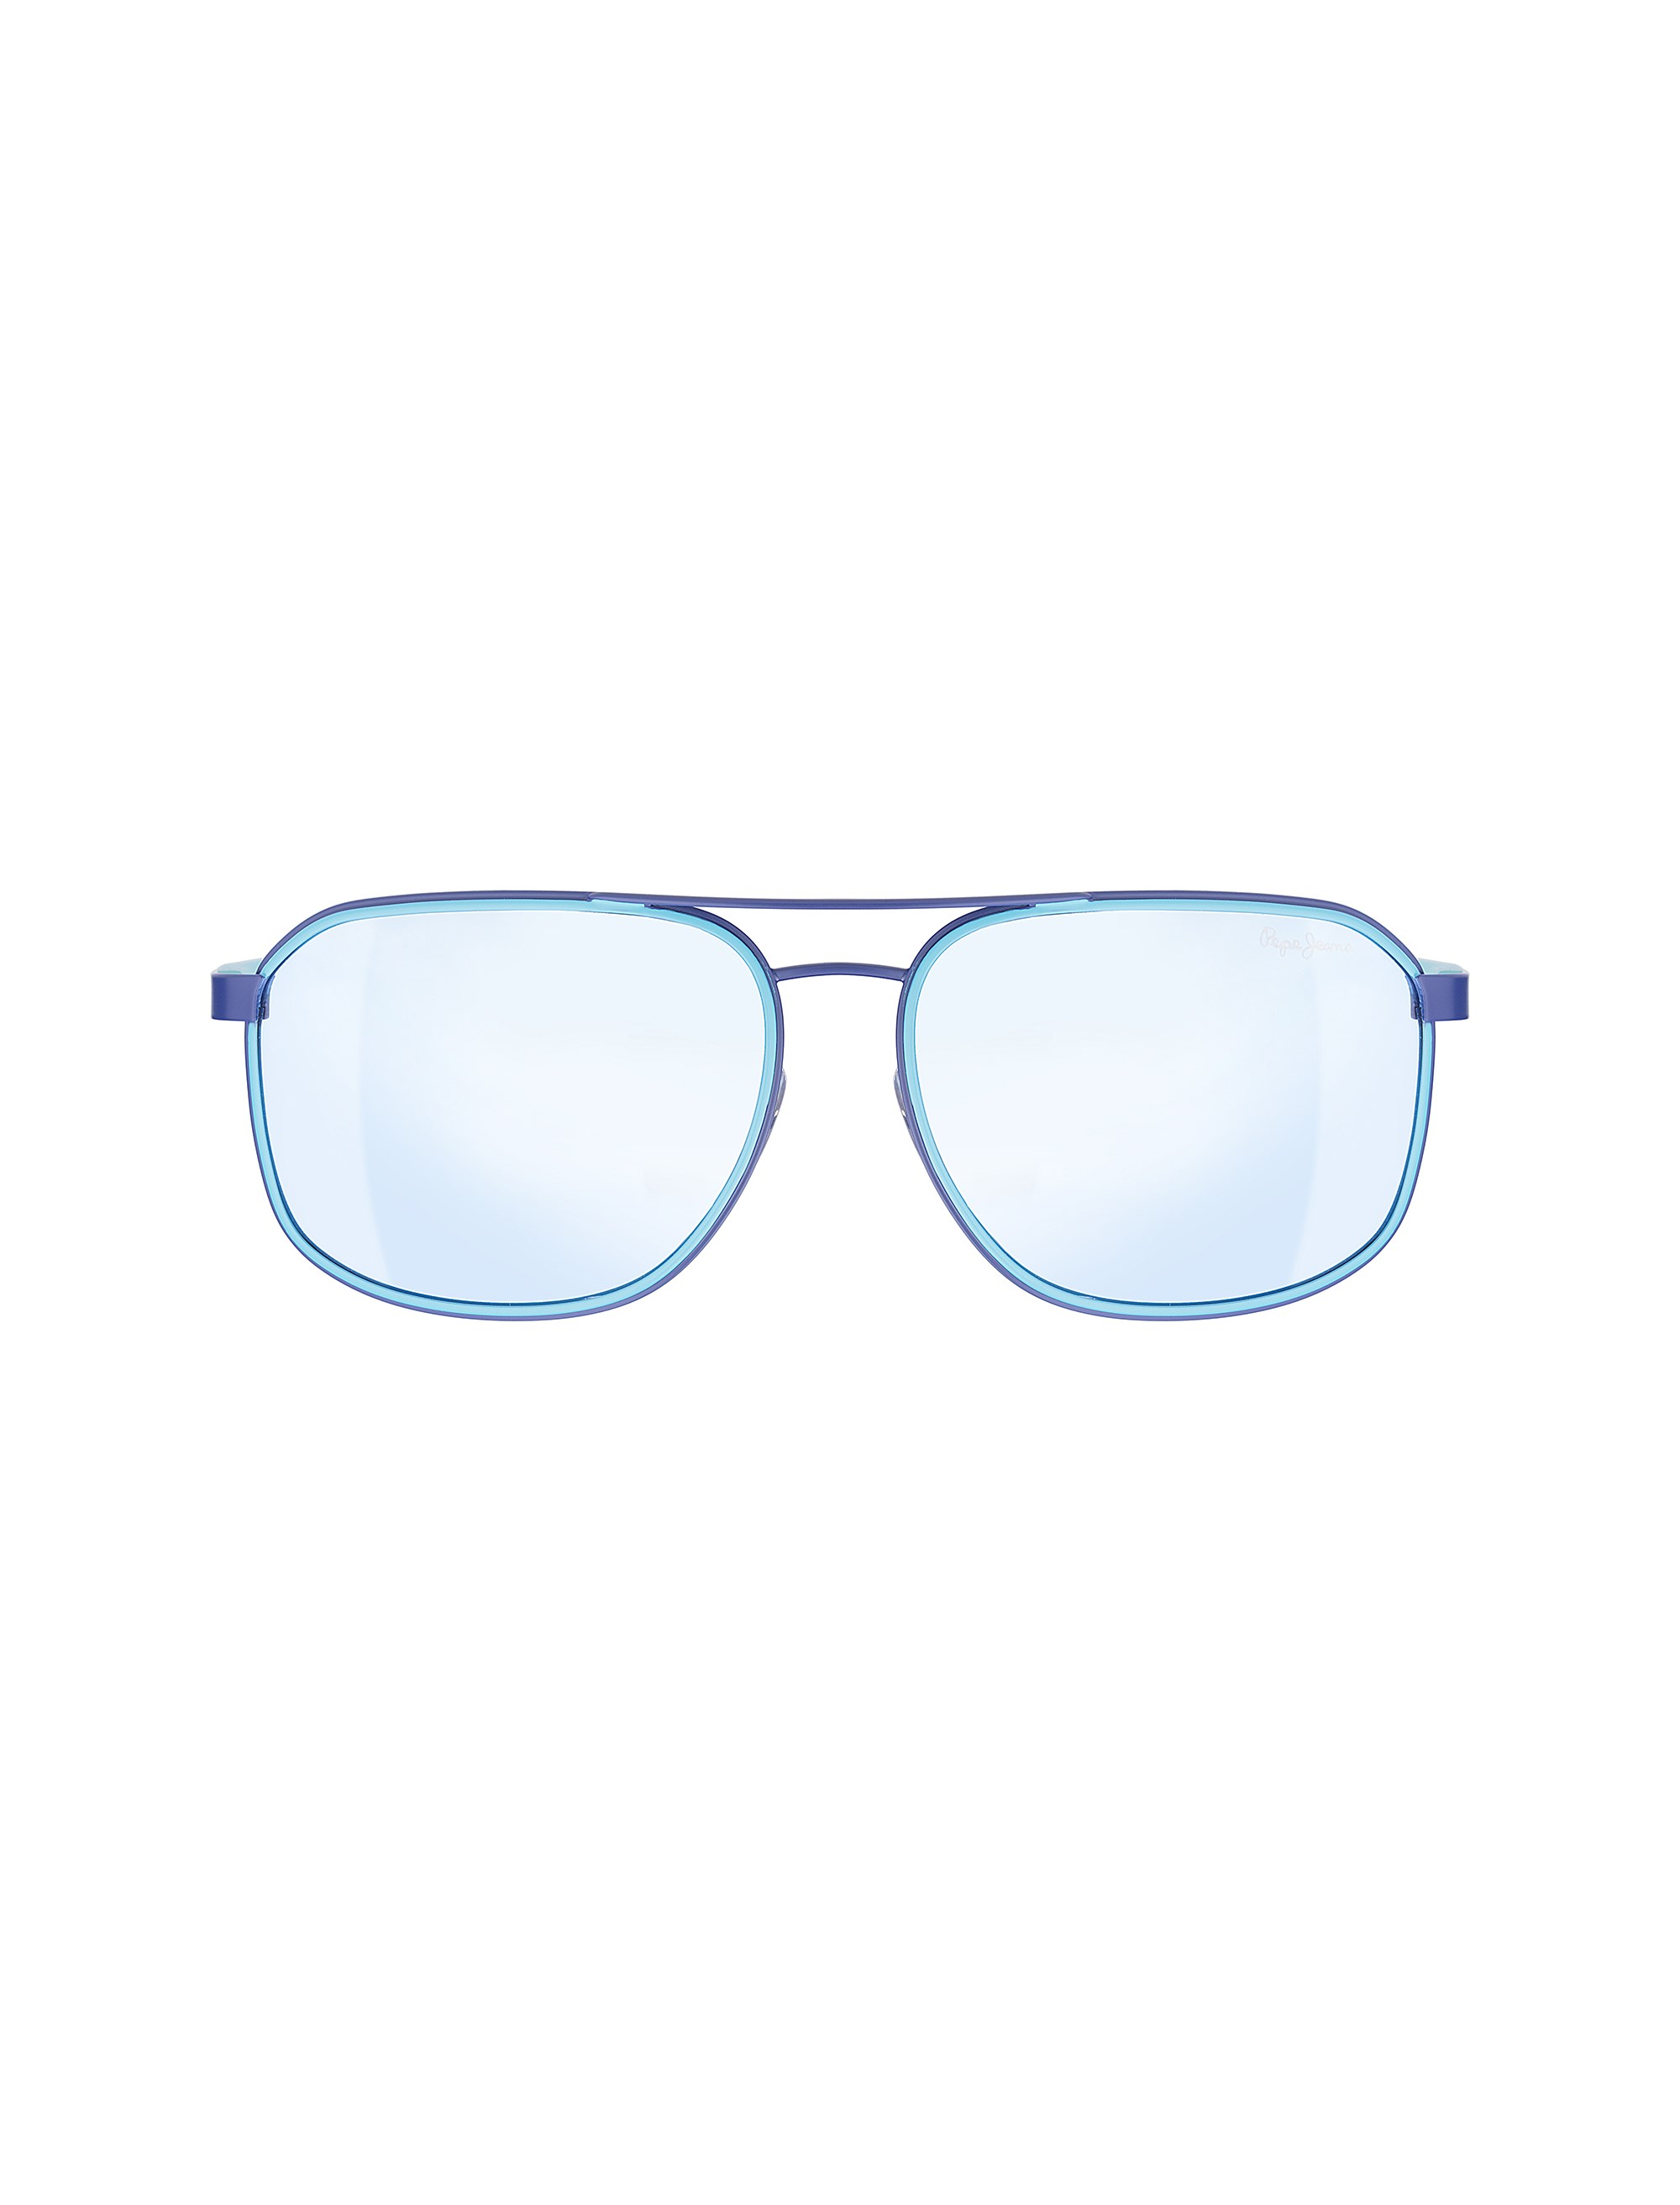 عینک آفتابی خلبانی زنانه - پپه جینز - آبي - 1